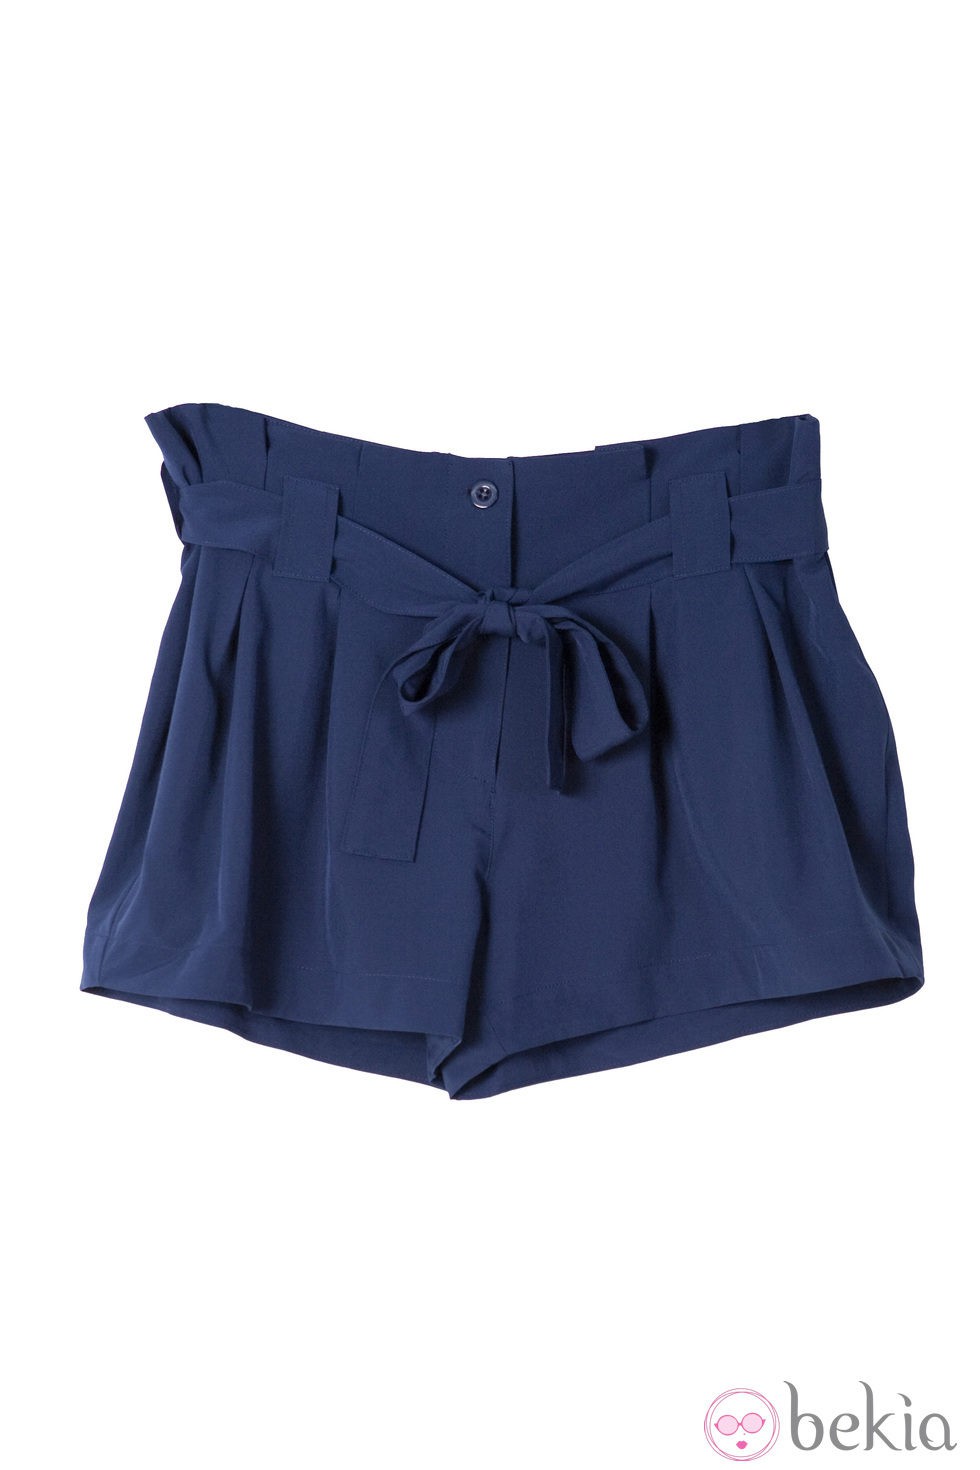 Shorts de la colección primavera/verano 2014 de Lavand